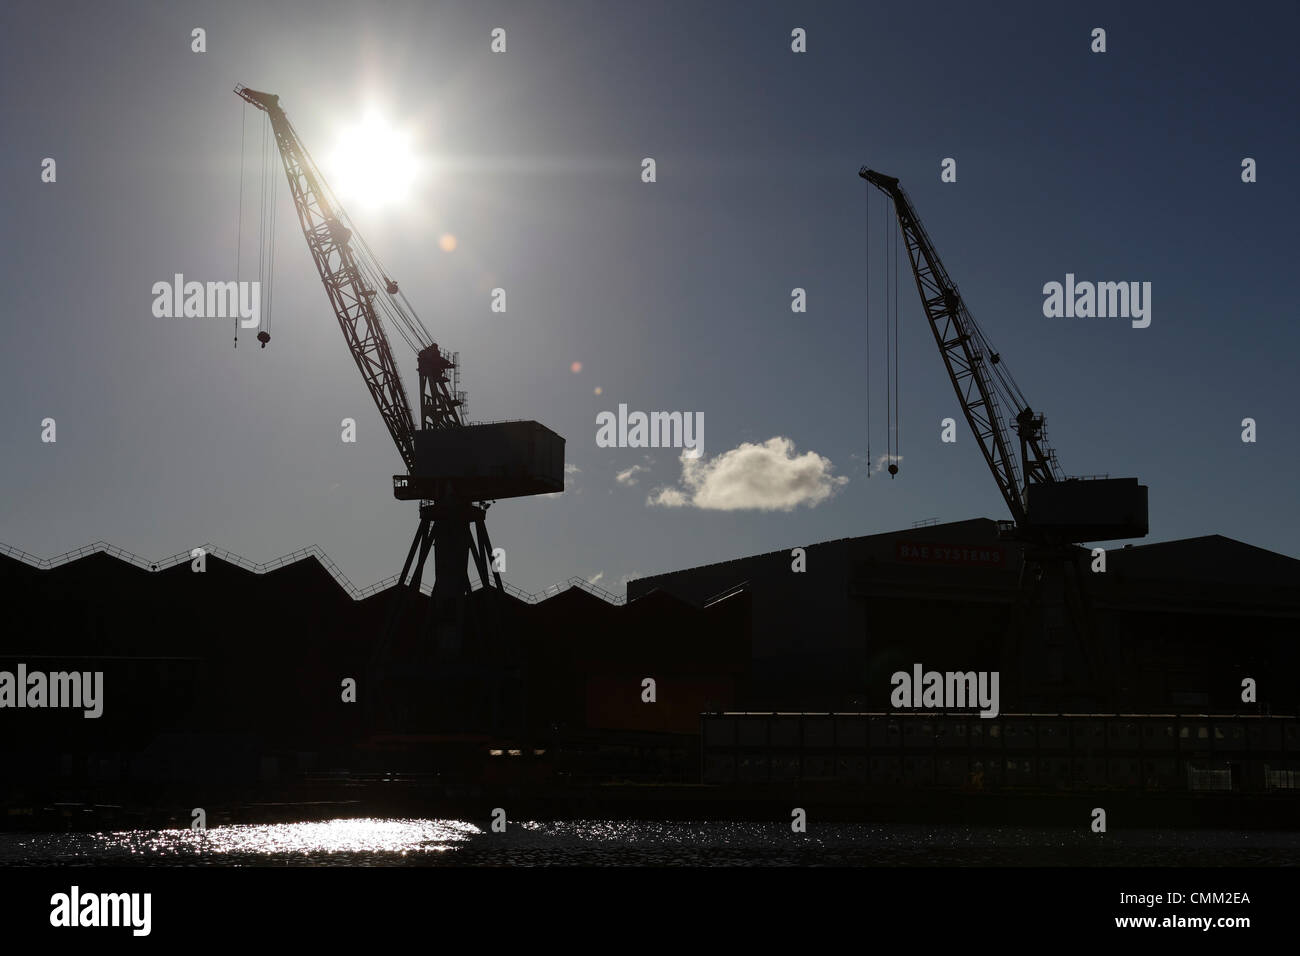 BAE Systems Shipyard, Govan, Glasgow, Schottland, UK, Montag, 4. November 2013. Nach der Ankündigung, dass die ikonischen Krane in der BAE System Shipyard in Govan am Fluss Clyde abgebaut werden sollen, wurde die Befürchtungen geäußert, dass die Werft voraussichtlich schließen wird. Stockfoto